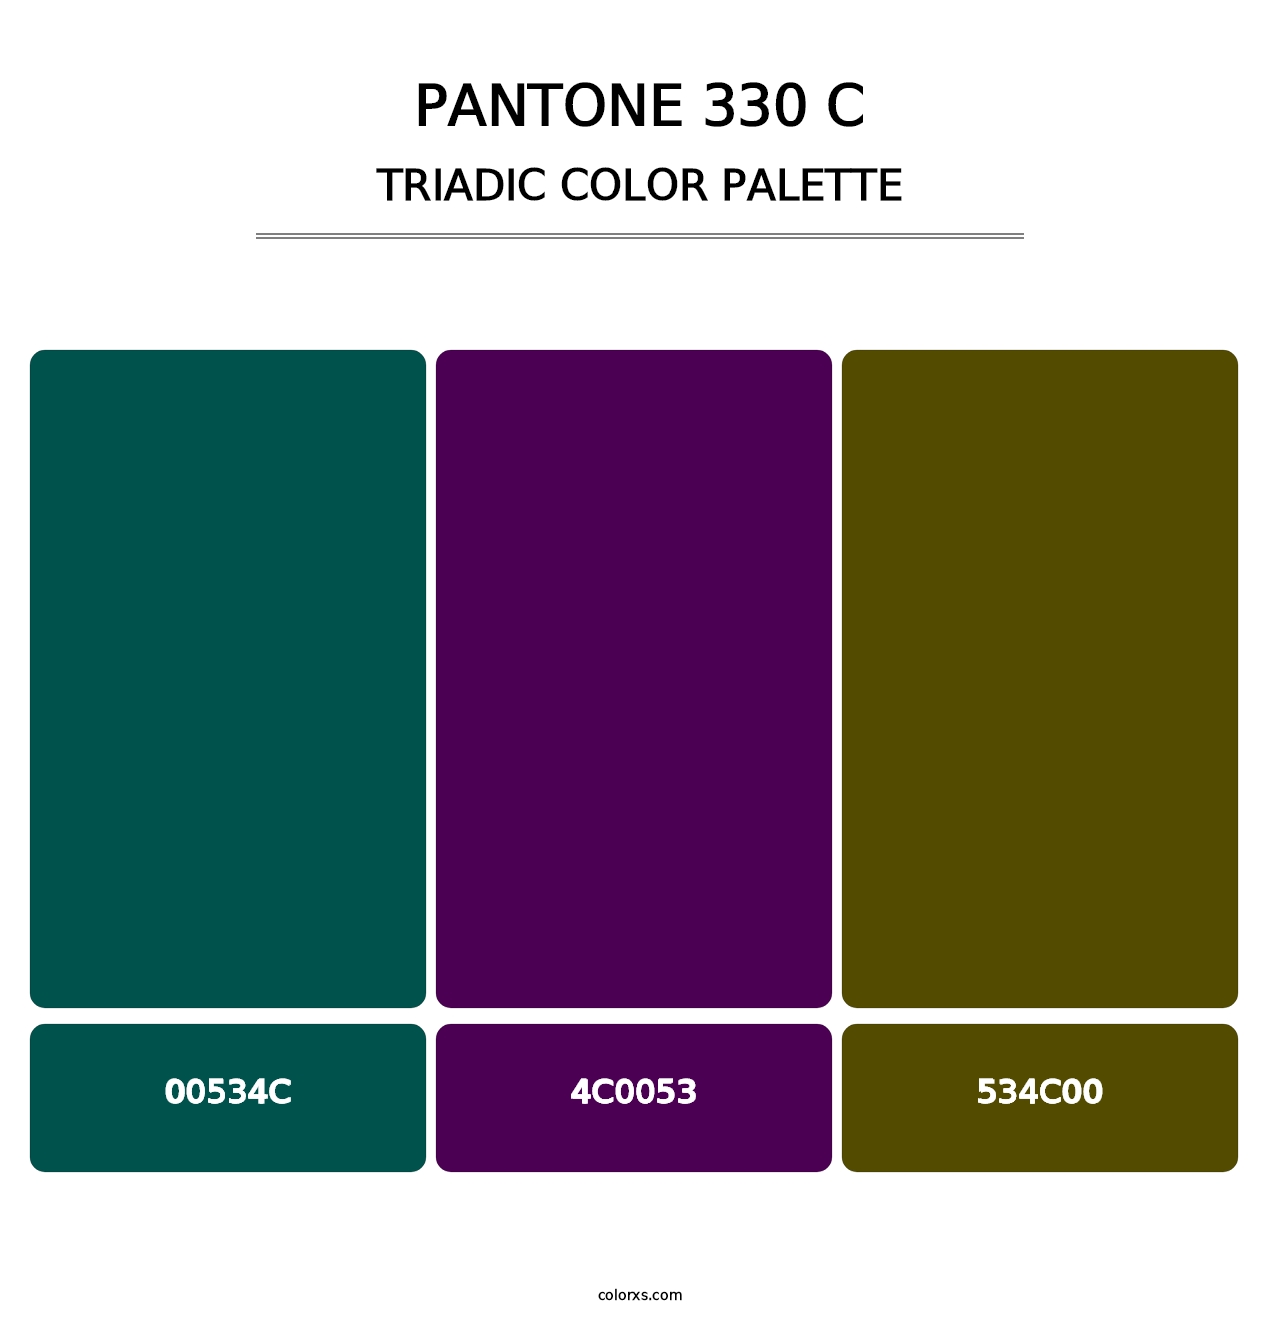 PANTONE 330 C - Triadic Color Palette